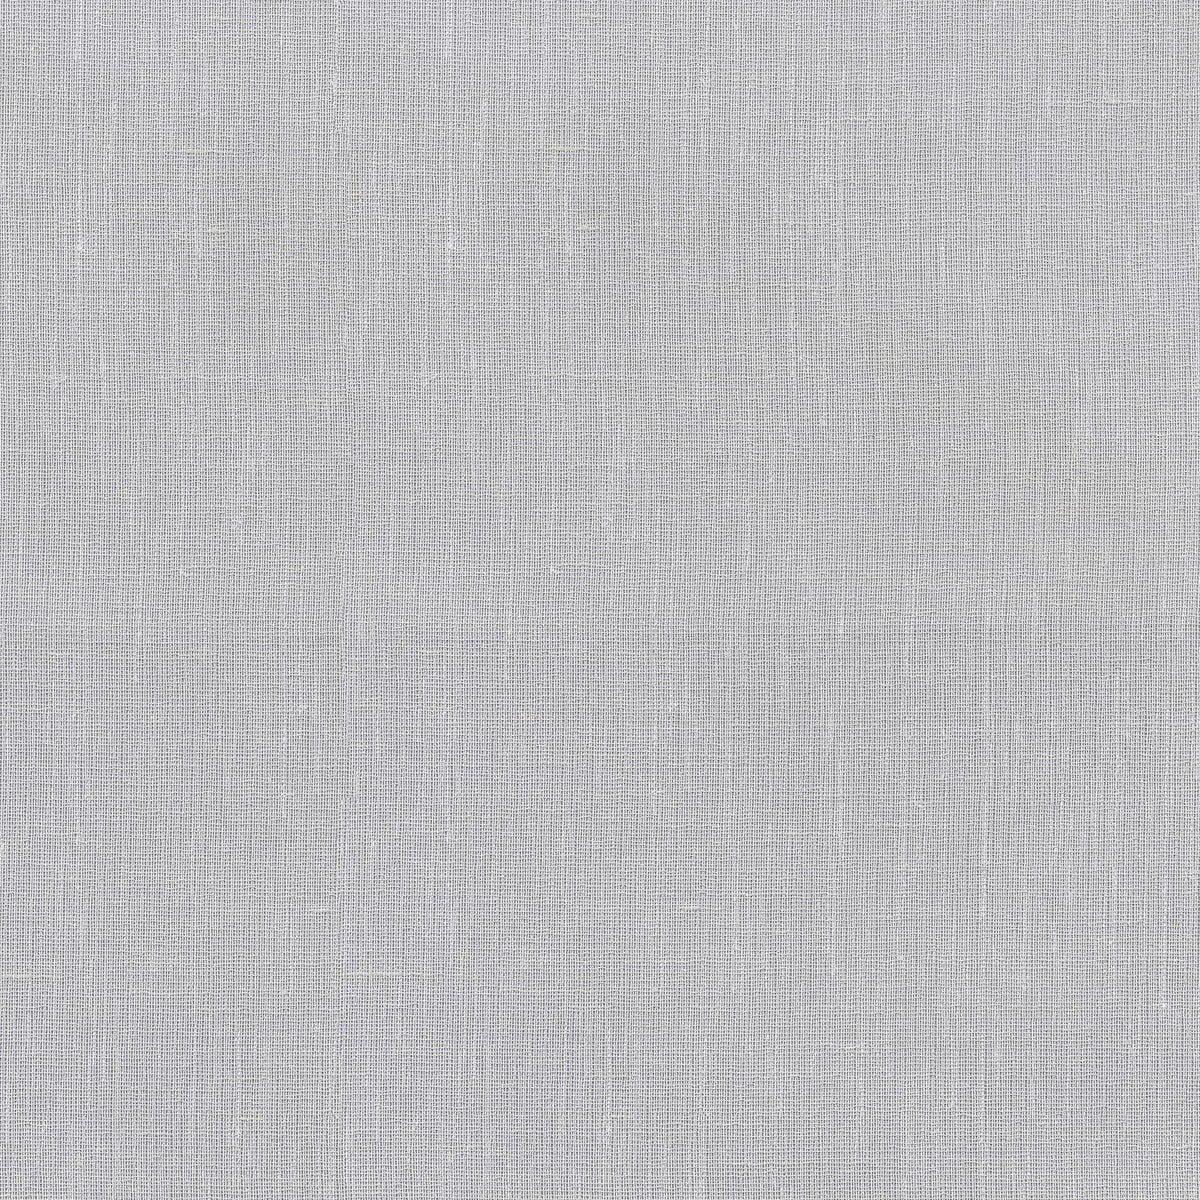 P/K Lifestyles Ariana - White 411130 Fabric Swatch